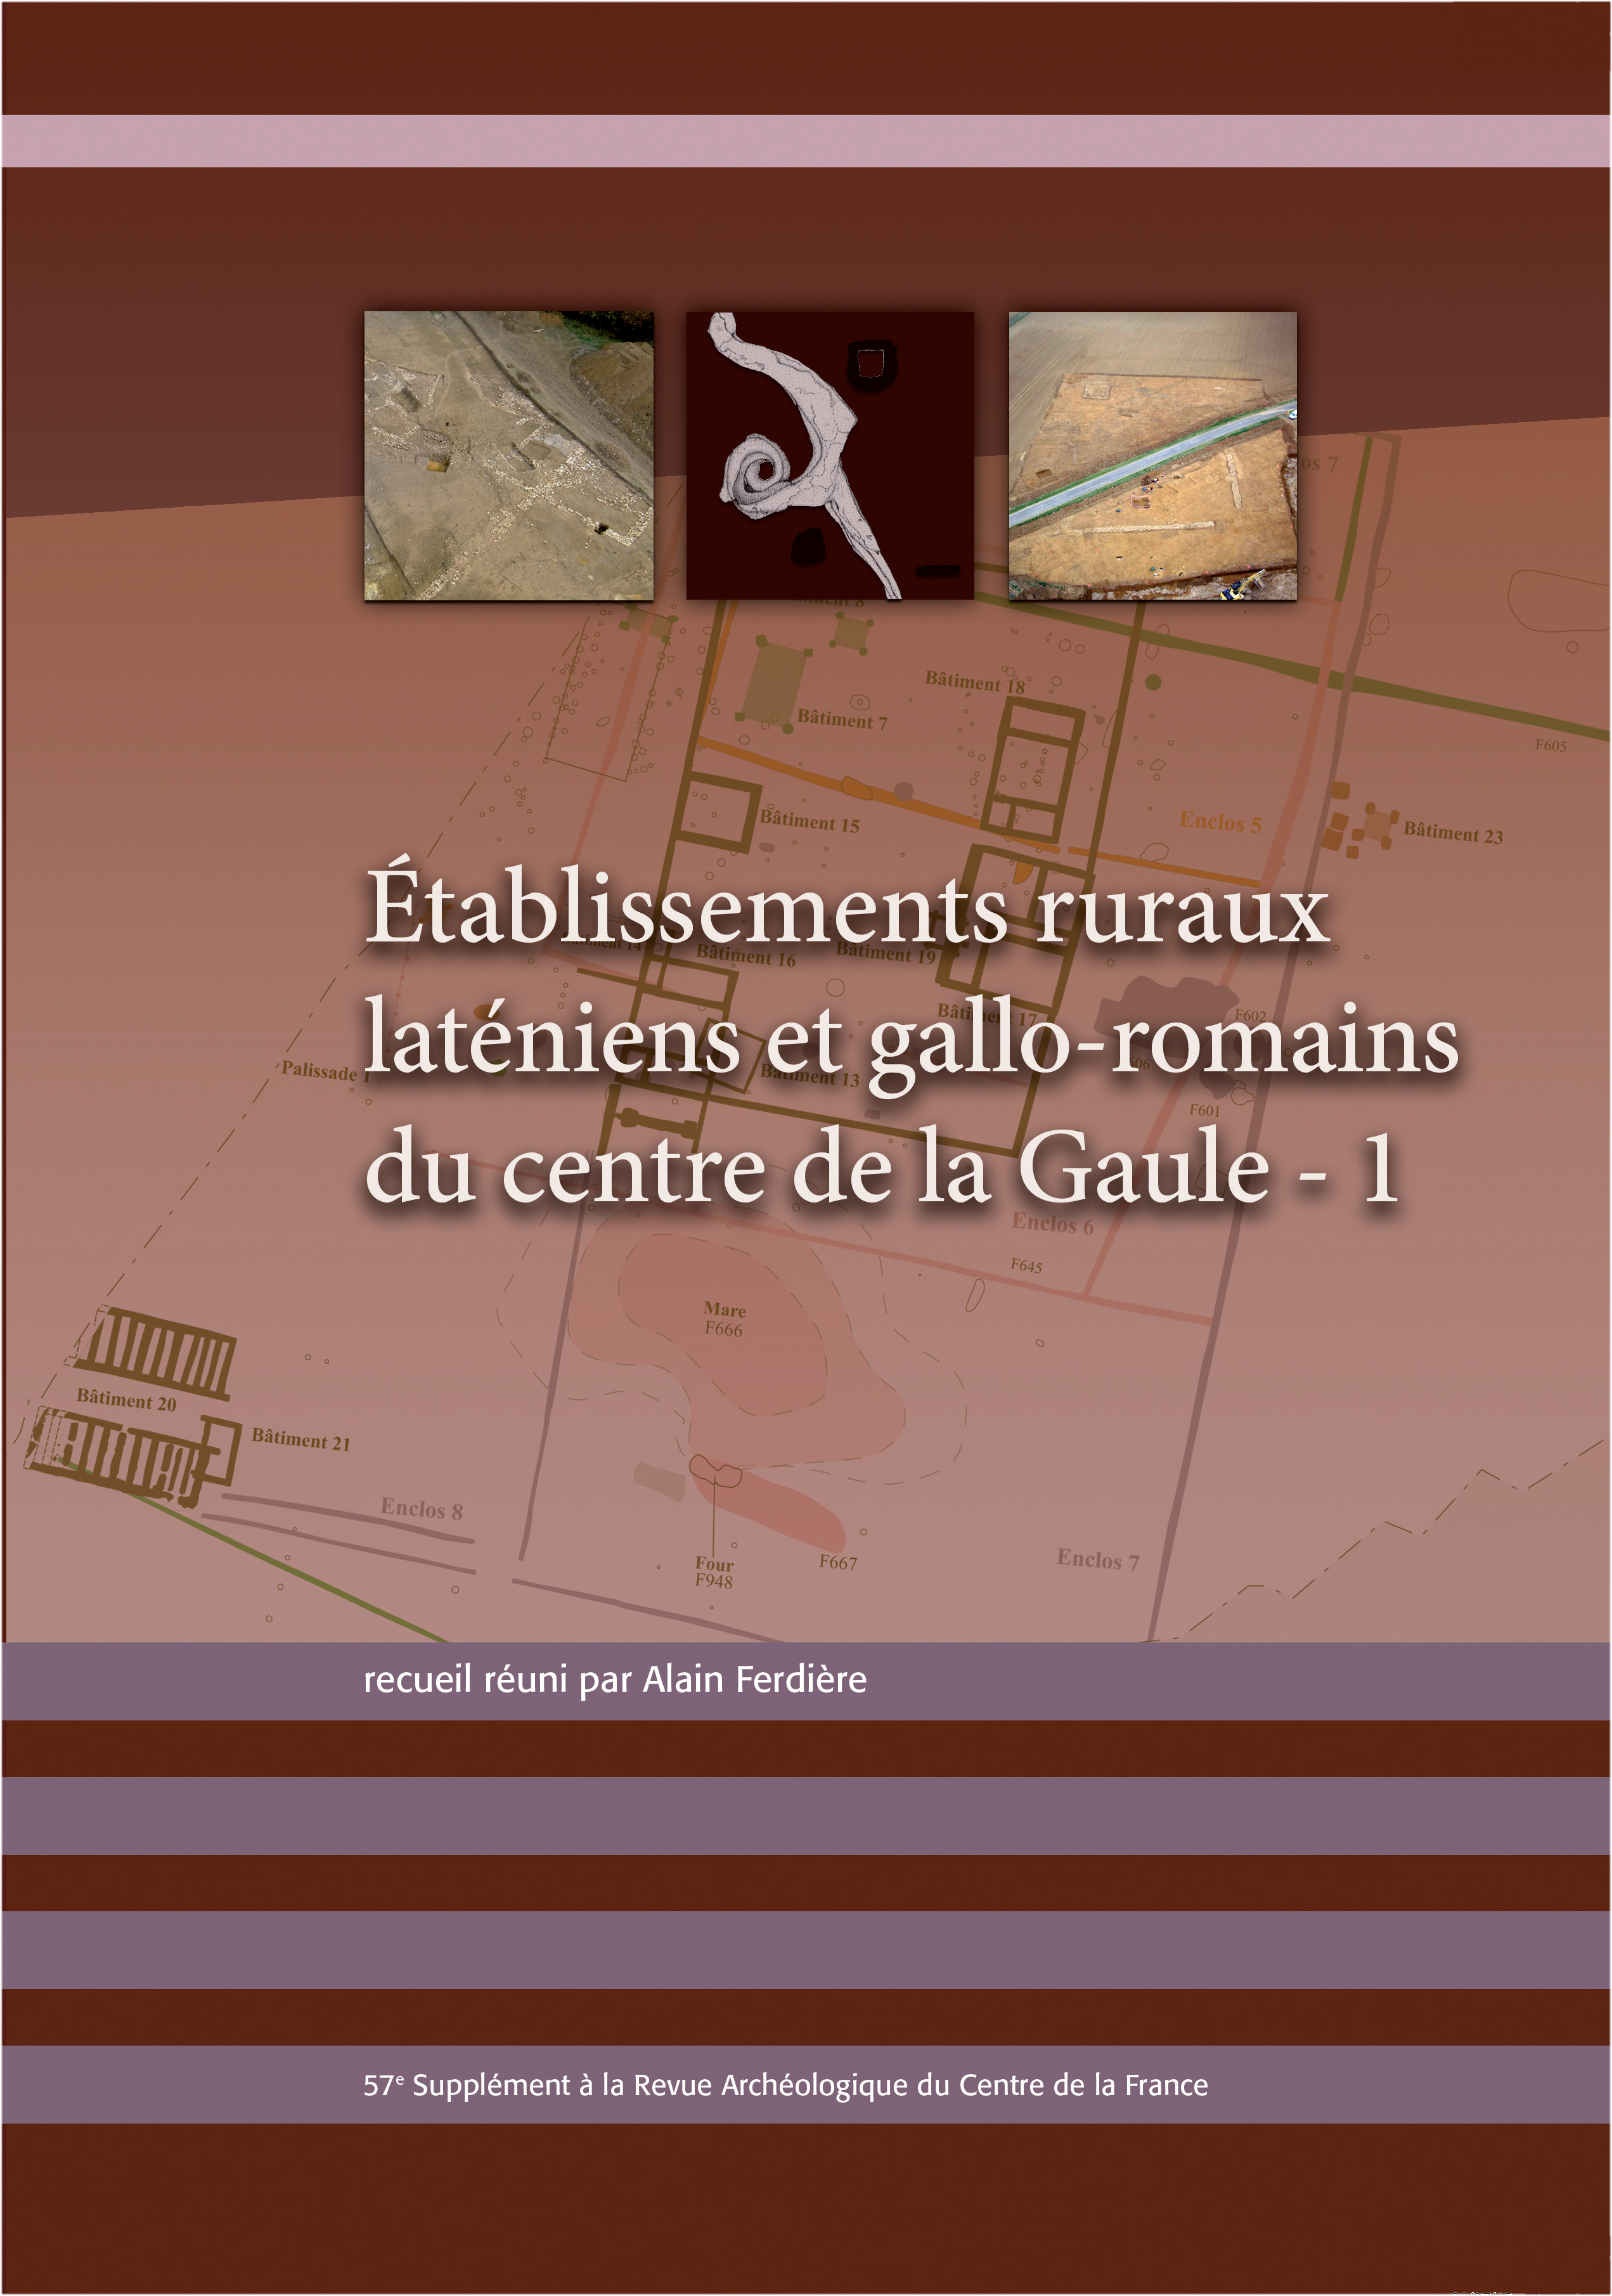 Établissements ruraux laténiens et gallo-romains du centre de la Gaule - 1, (57e suppl. RACF), 2015, 202 p.